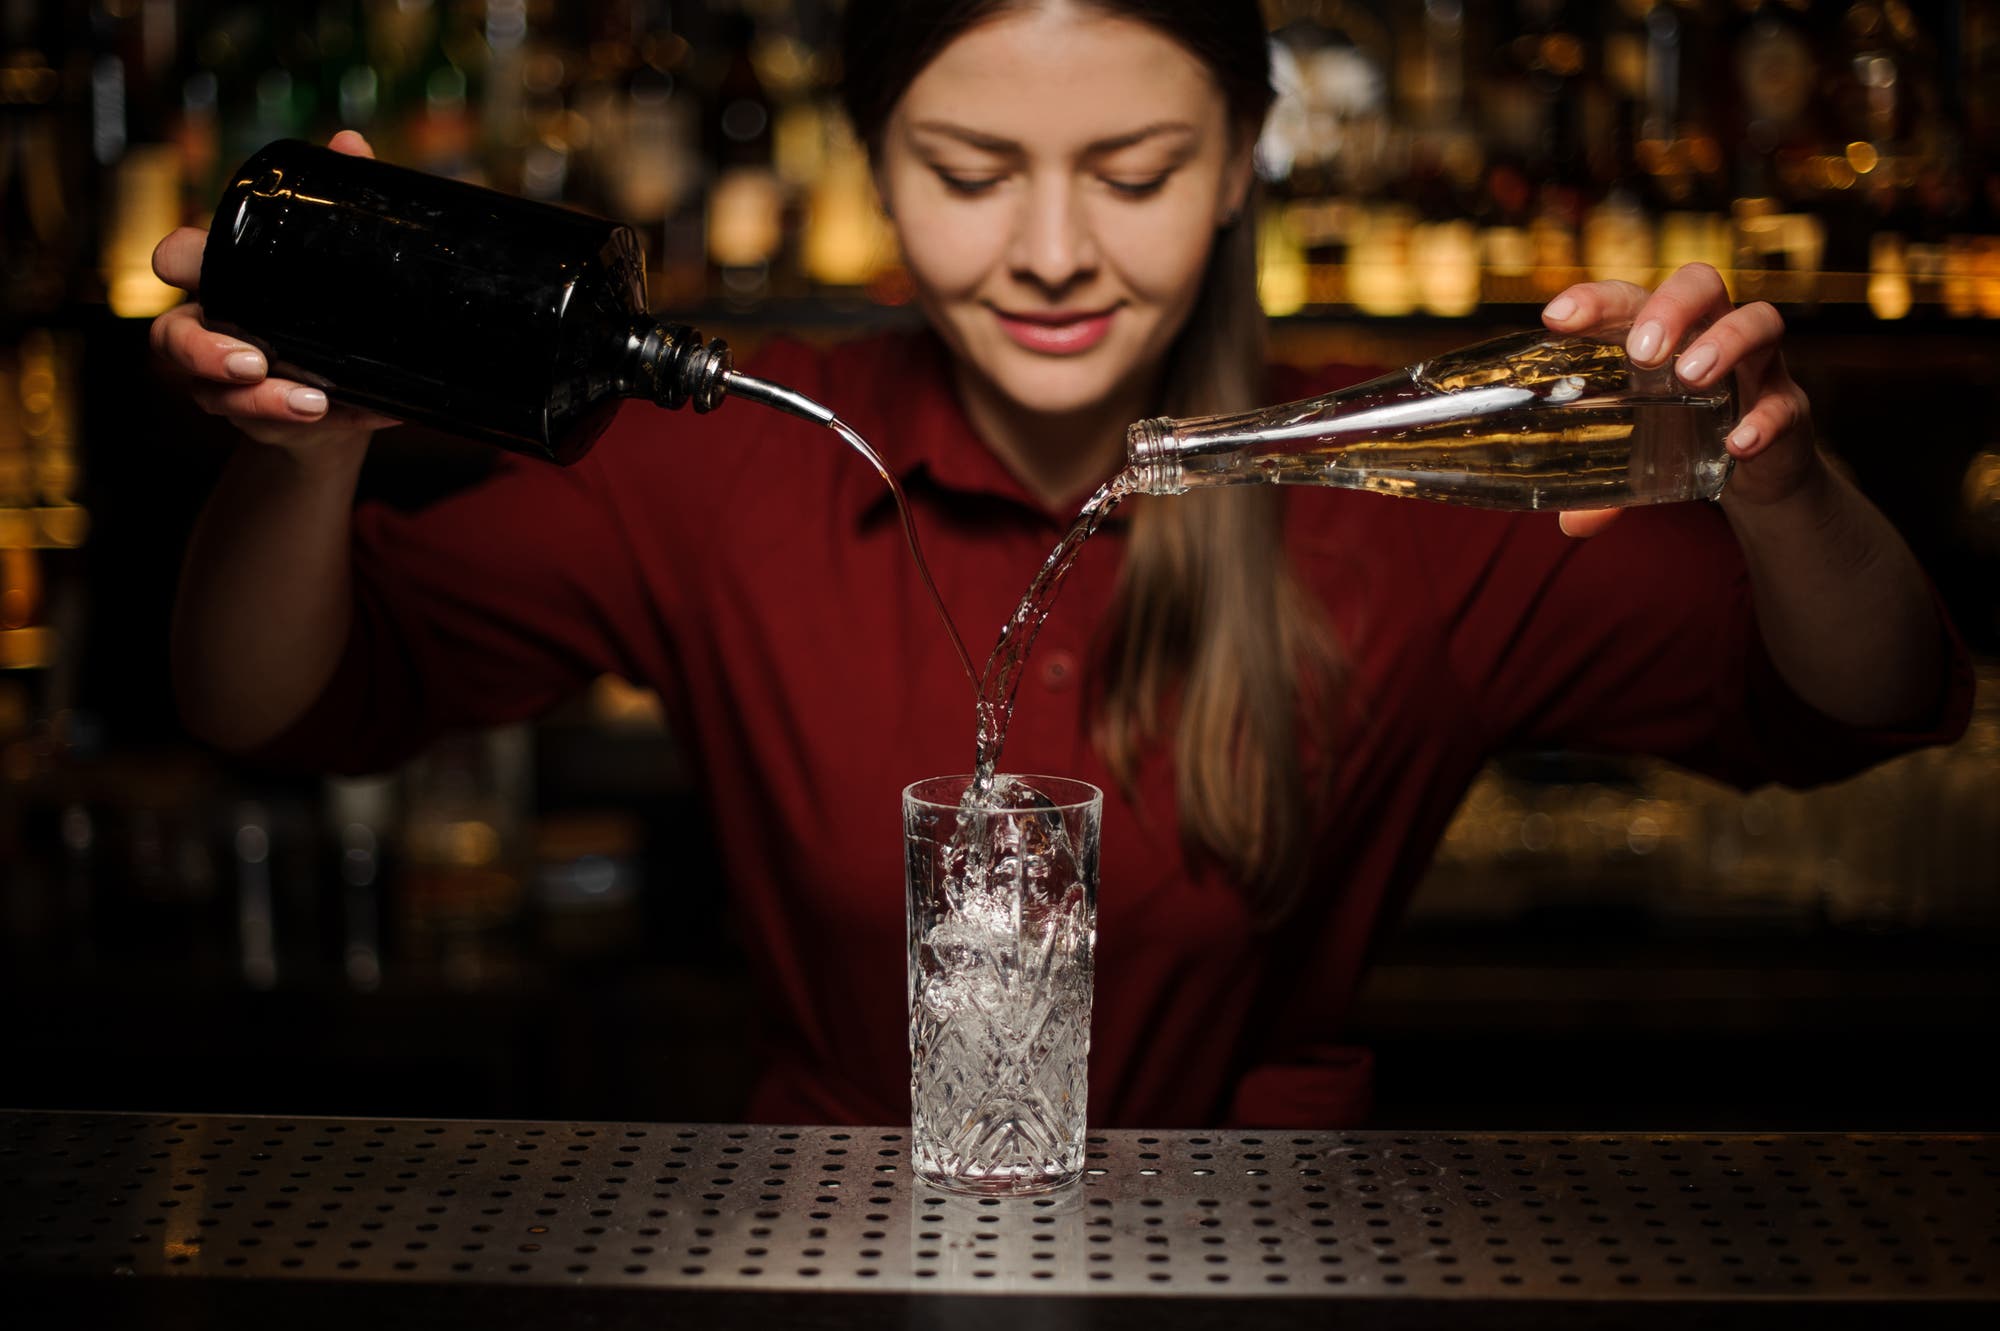 Auch Gin lässt sich passabel imitieren, besonders als Zutat für einen alkoholfreien Gin-Cocktail.